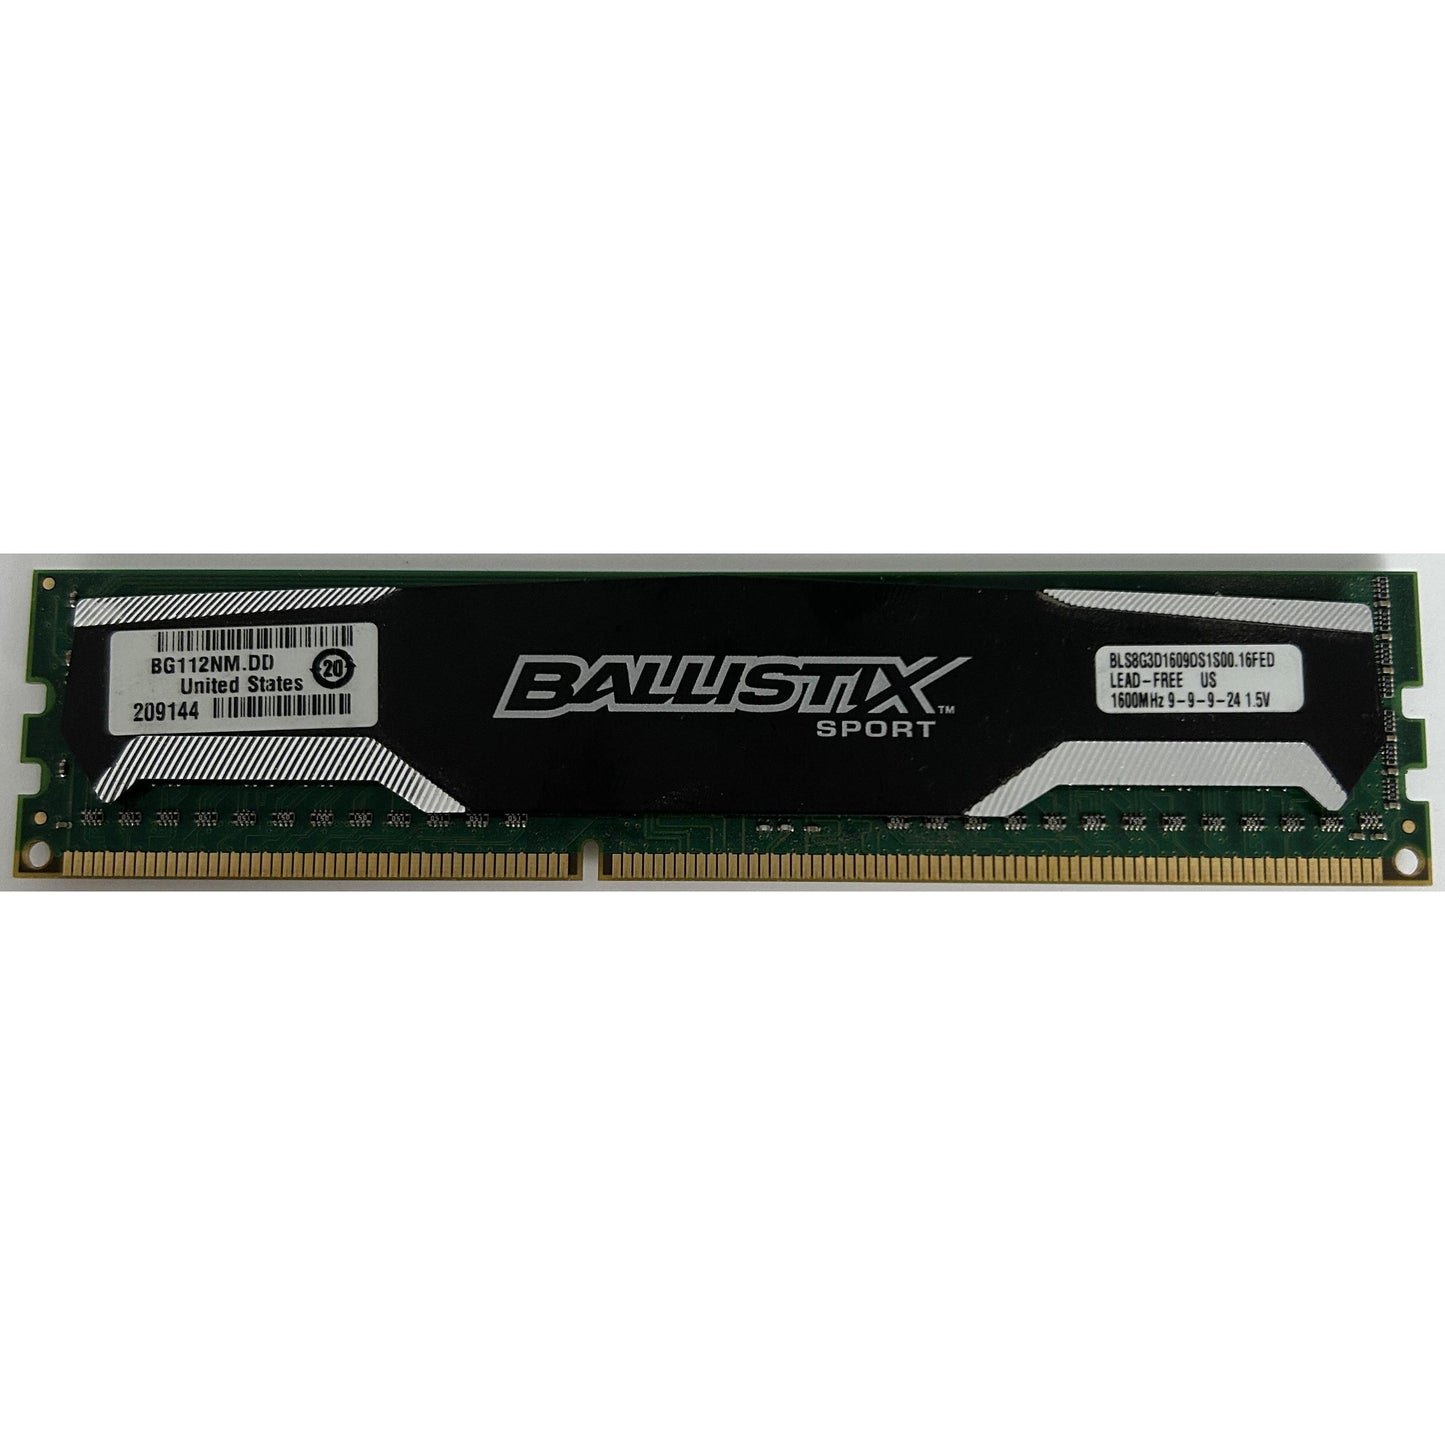 Crucial Ballistix Sport DDR3 RAM | 8/16/32GB | BLS8G3D1609DS1S00 | 9-9-9-24 CL9